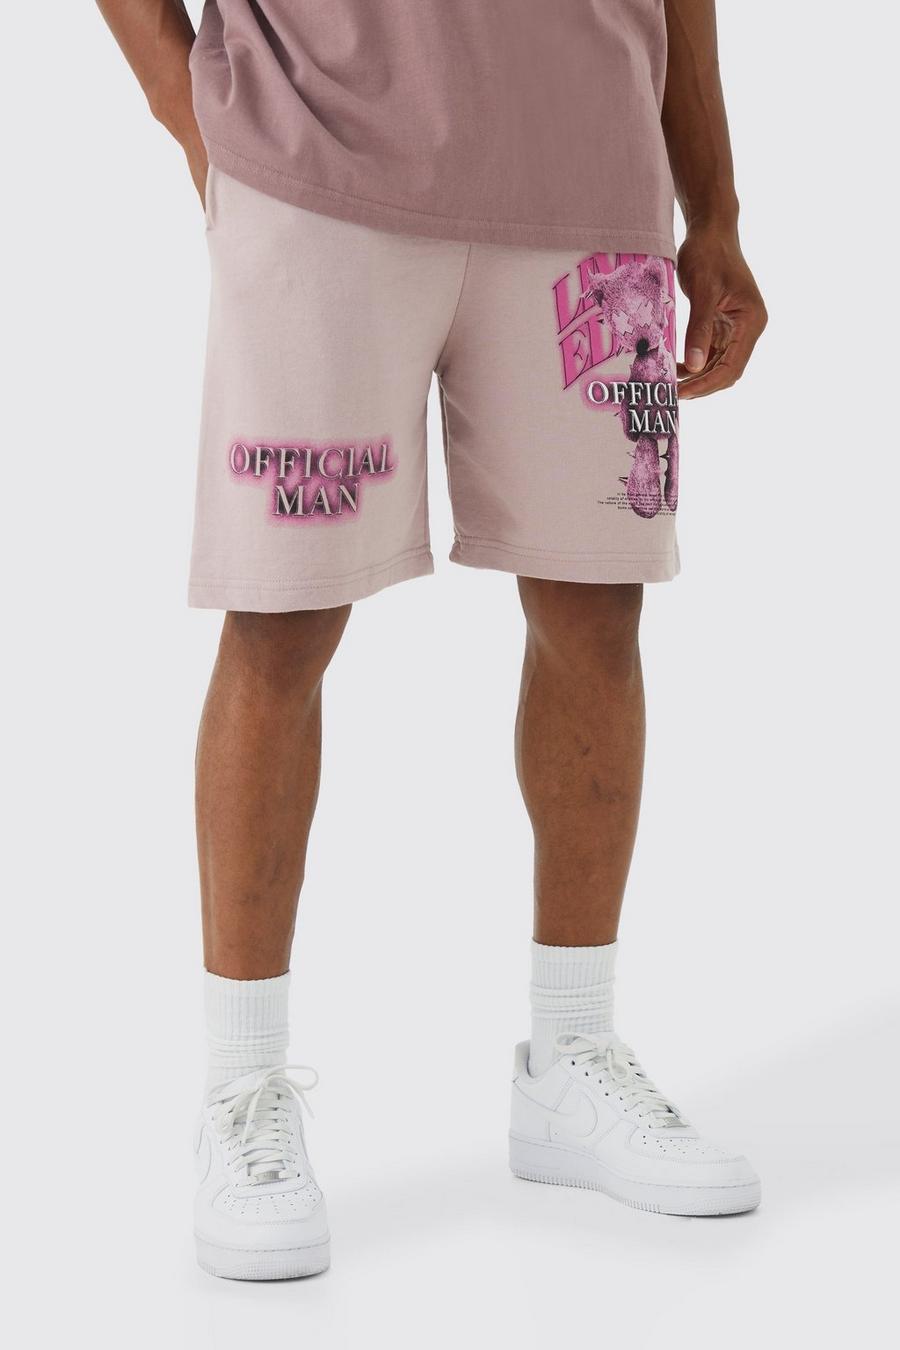 Pantalón corto holgado Limited de tela jersey con estampado de osito de peluche, Dusty pink